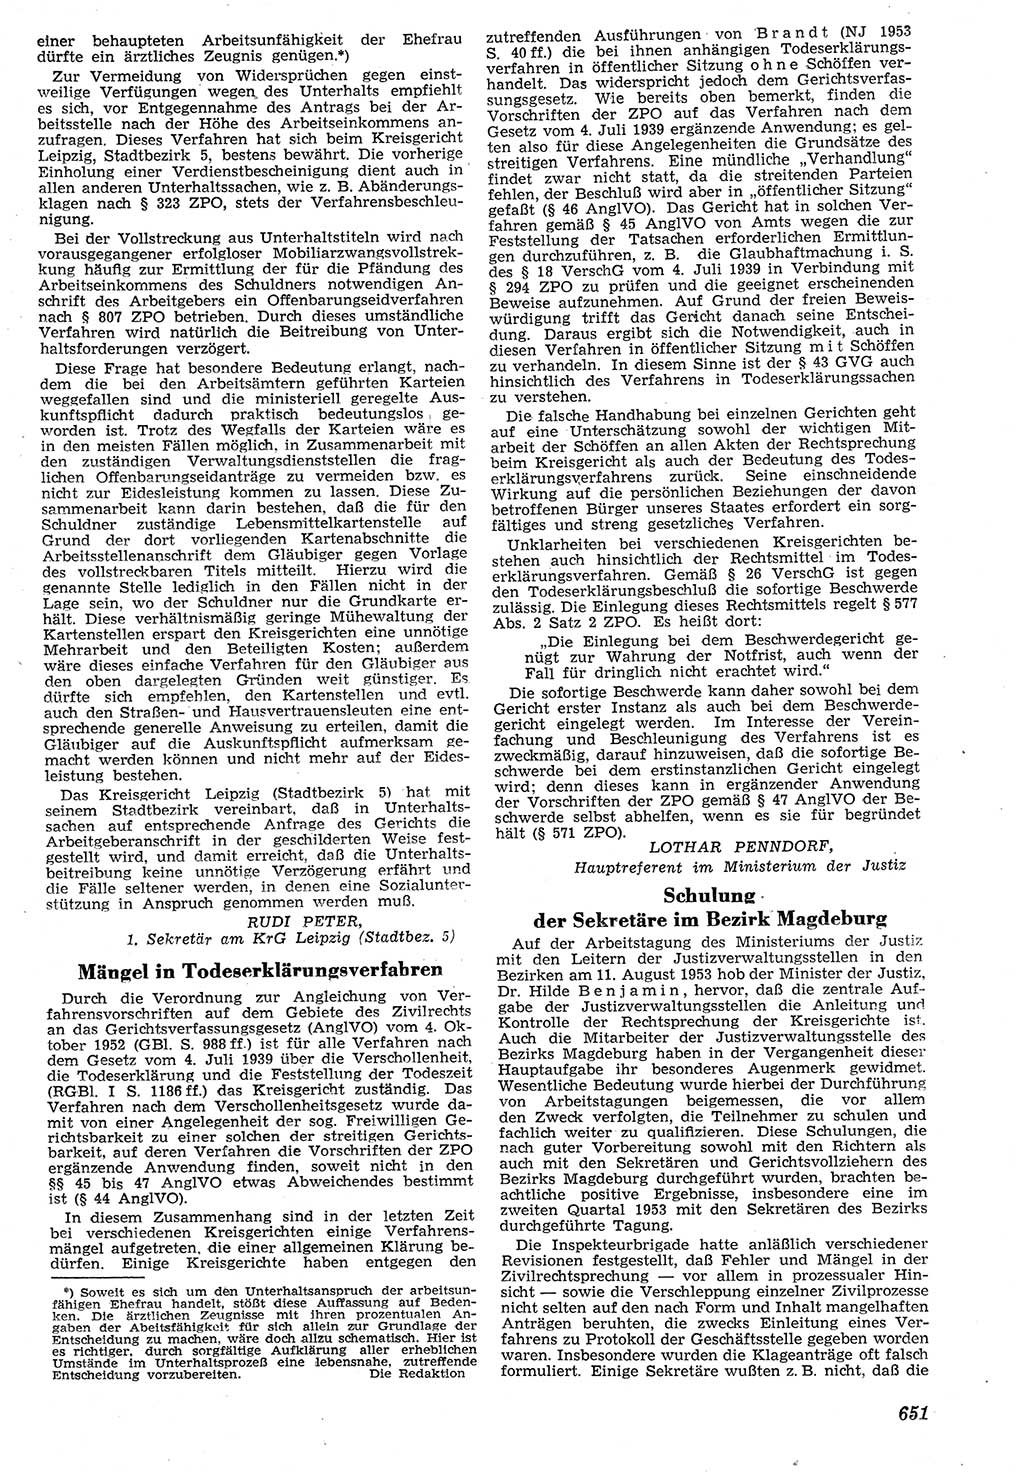 Neue Justiz (NJ), Zeitschrift für Recht und Rechtswissenschaft [Deutsche Demokratische Republik (DDR)], 7. Jahrgang 1953, Seite 651 (NJ DDR 1953, S. 651)